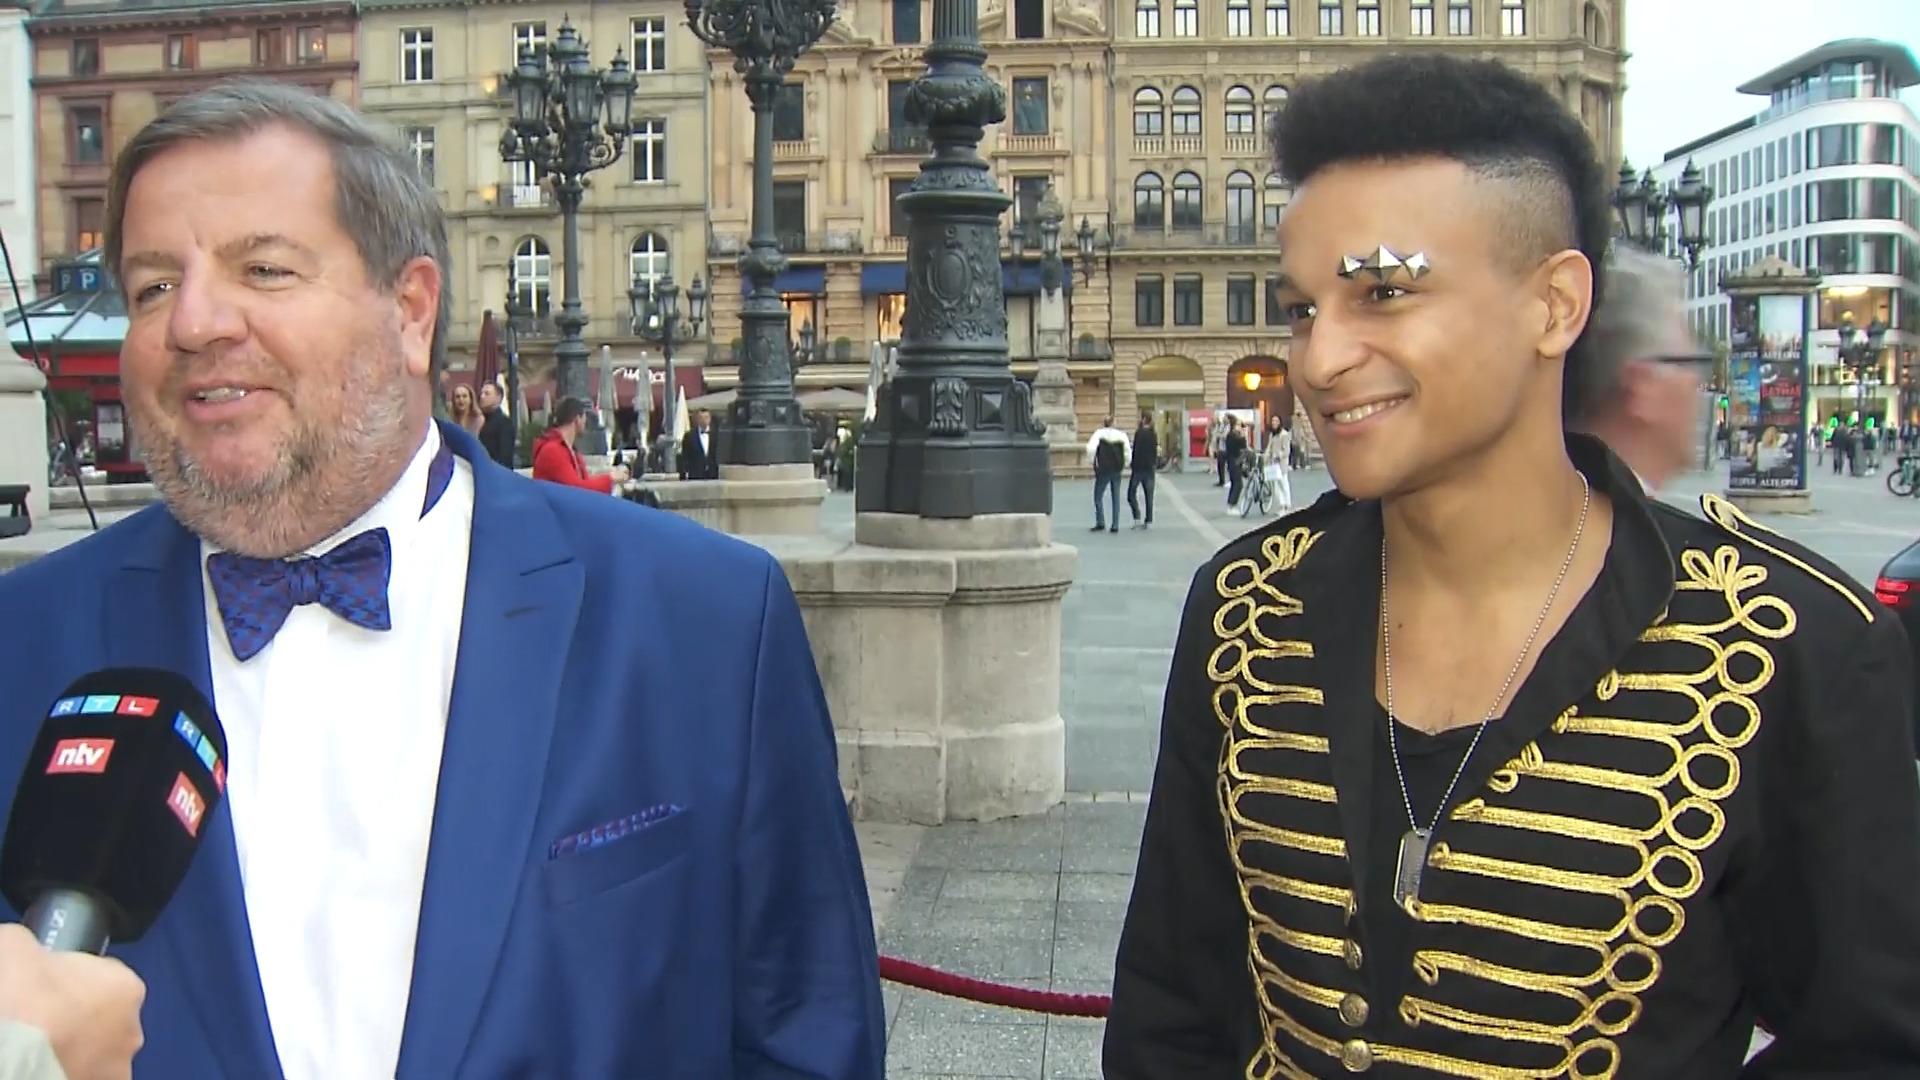 Prince Damien und Bernd Reisig auf der Frankfurter Markengal Ungleiches Duo